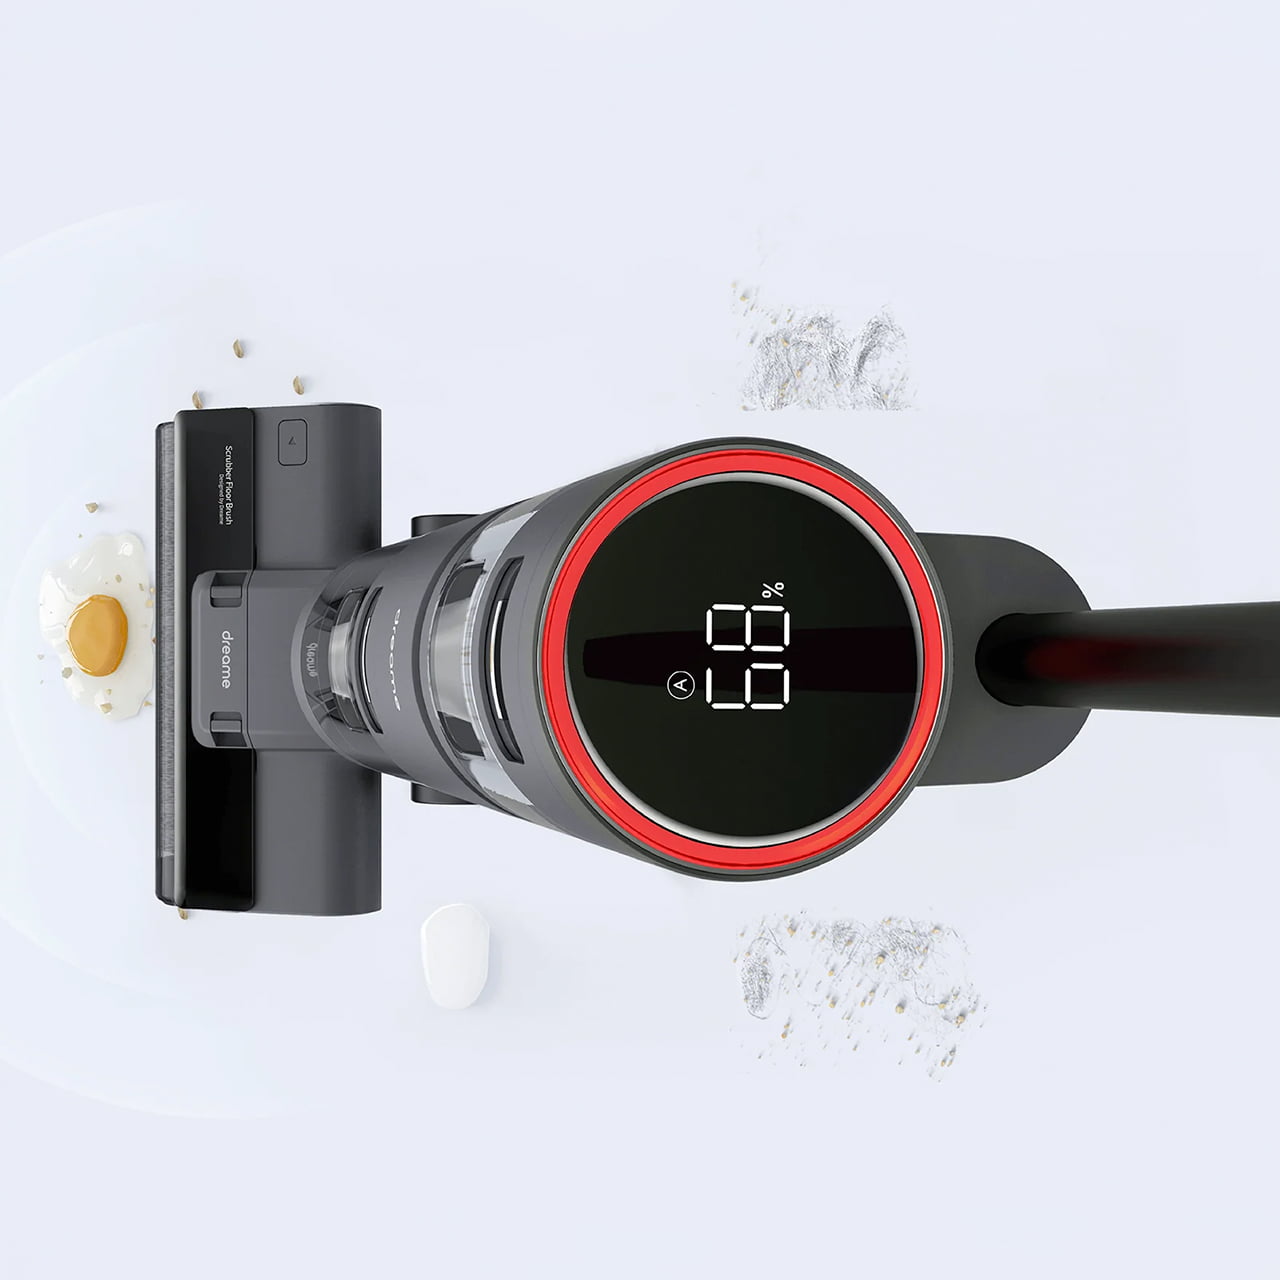 Dreame H12 Wet and Dry автоматически регулирует мощность всасывания в зависимости от степени загрязнения